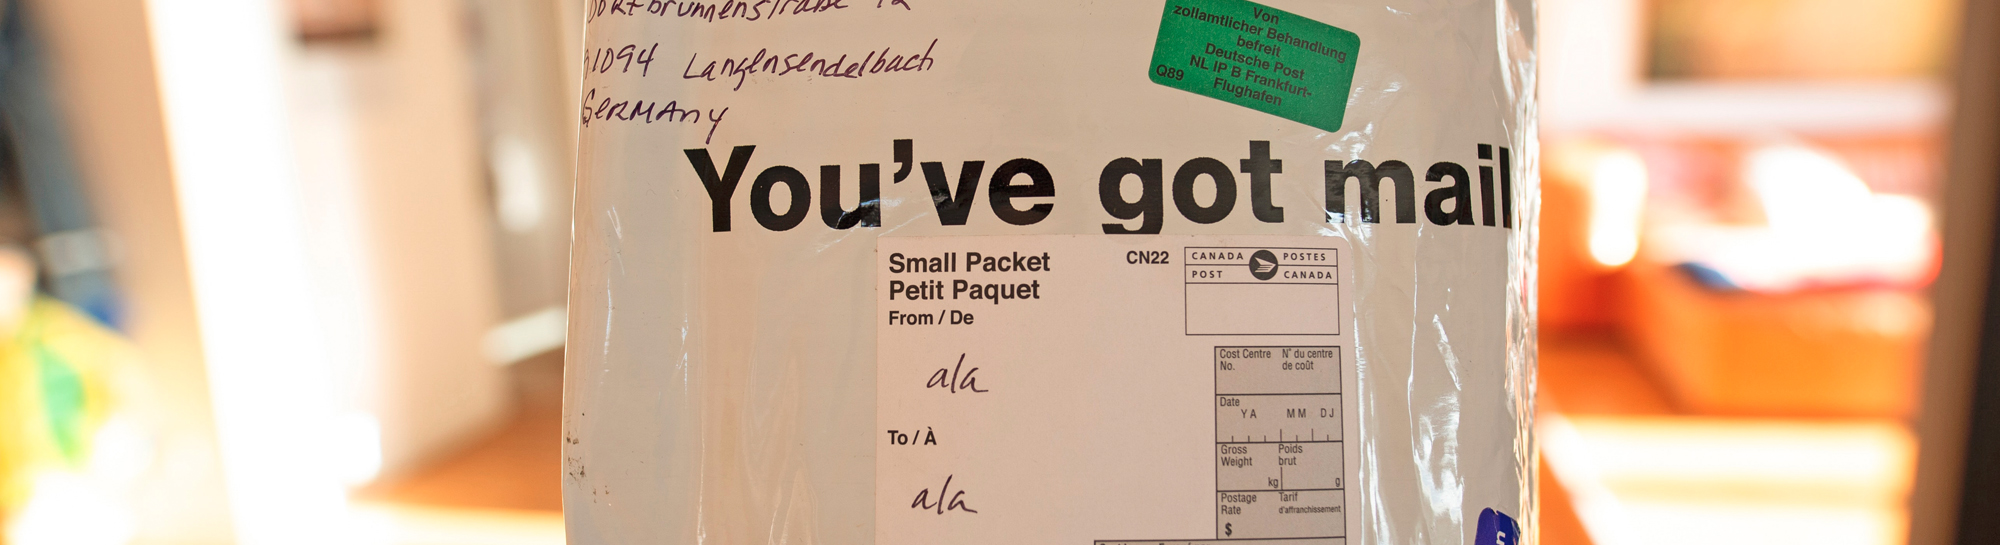 PostNL Packets: kleine pakketjes voordelig wereldwijd verzenden